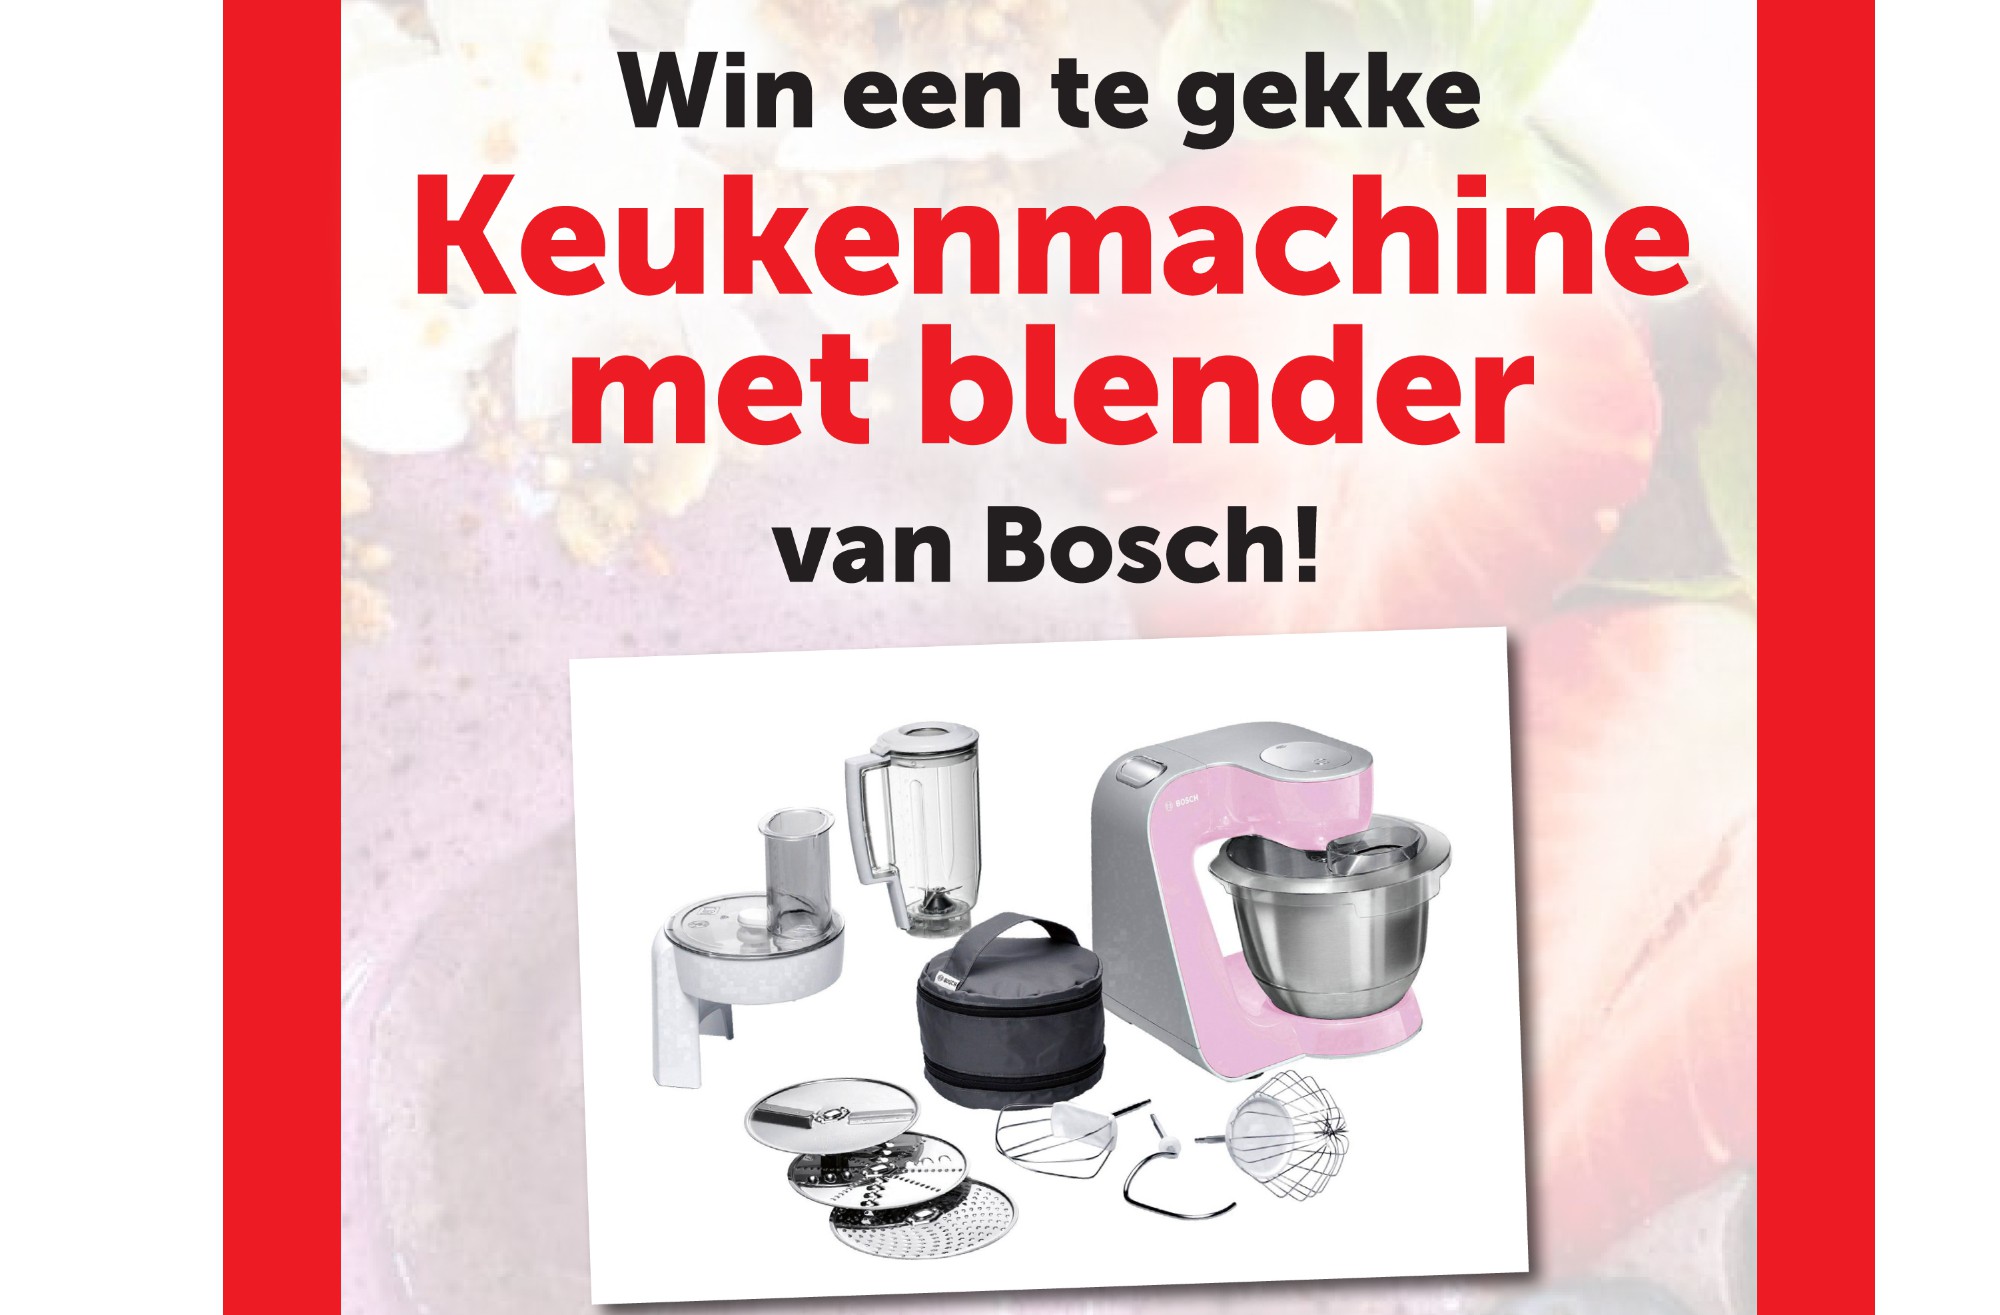 Win een Bosch keukenmachine met blender